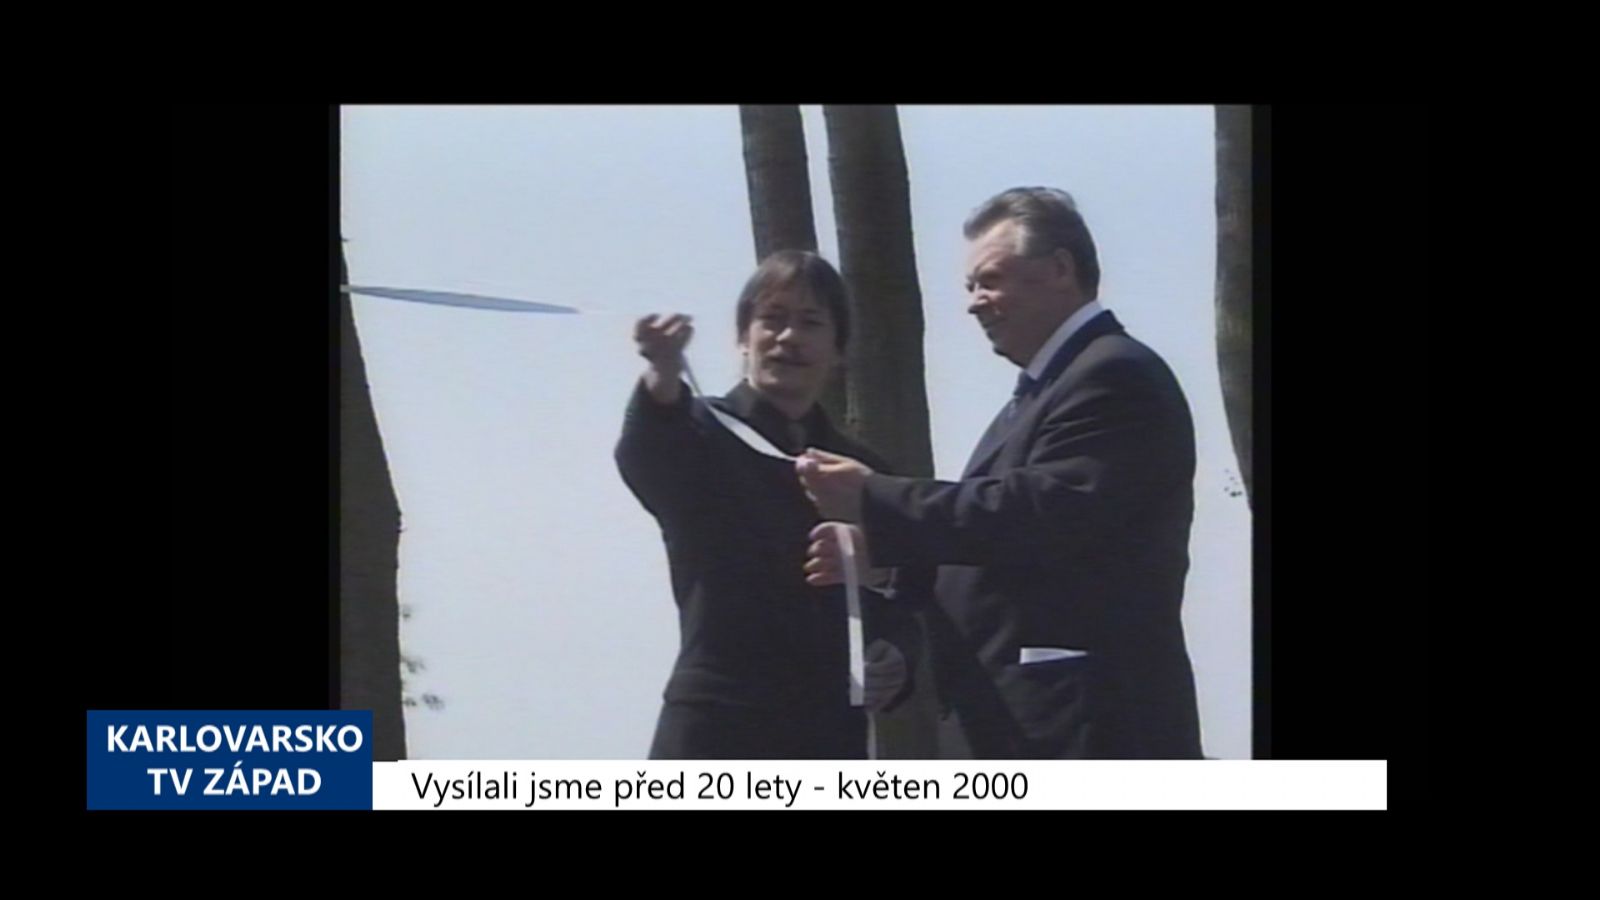 2000 – Cheb: Byl odhalen Památník sovětským obětem 2. sv. války (TV Západ)